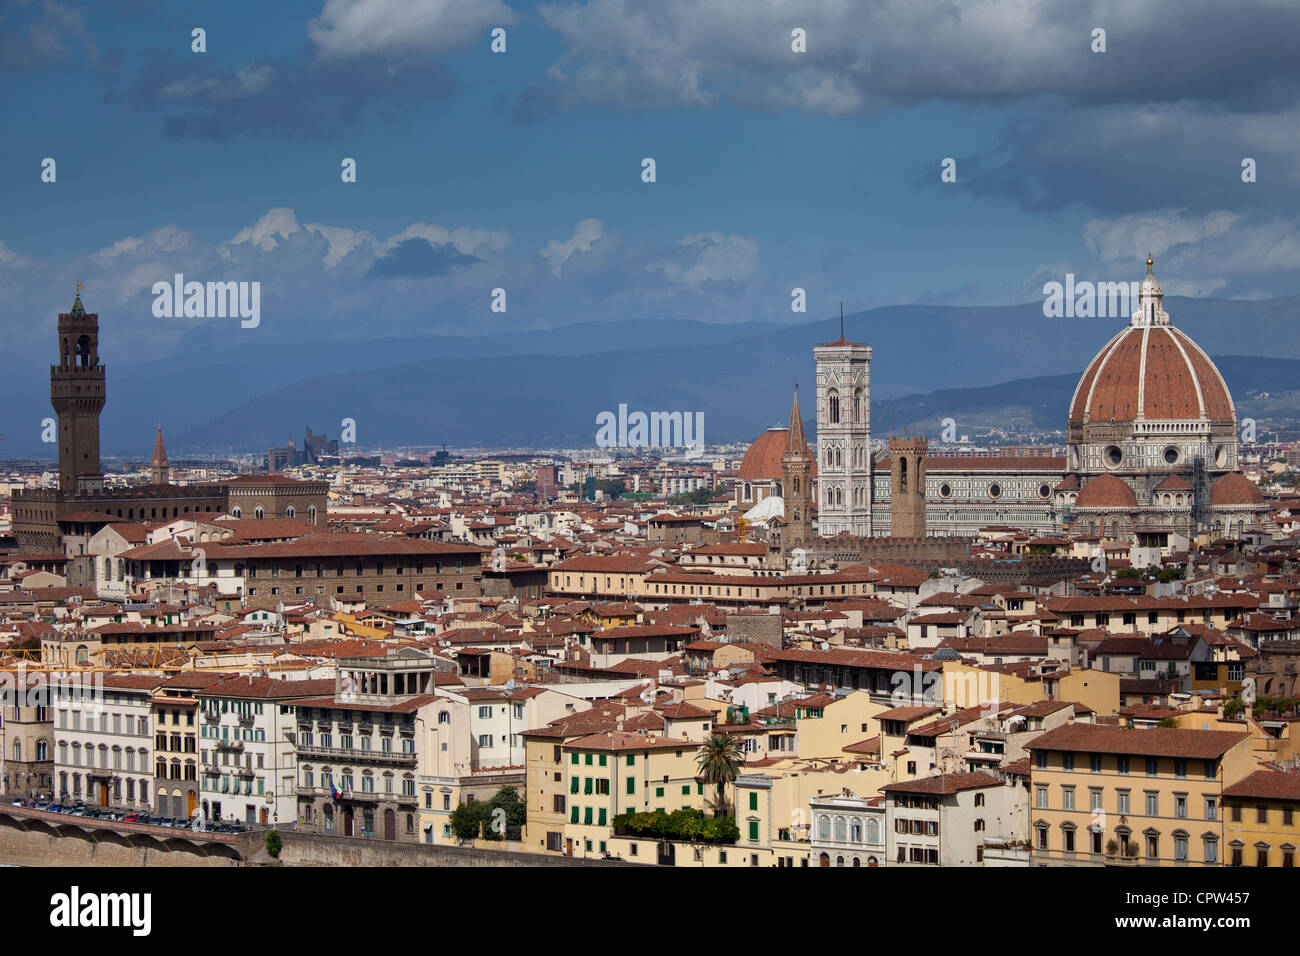 Die Stadt Florenz und Il Duomo di Florenz Kathedrale, Toskana, Italien Stockfoto